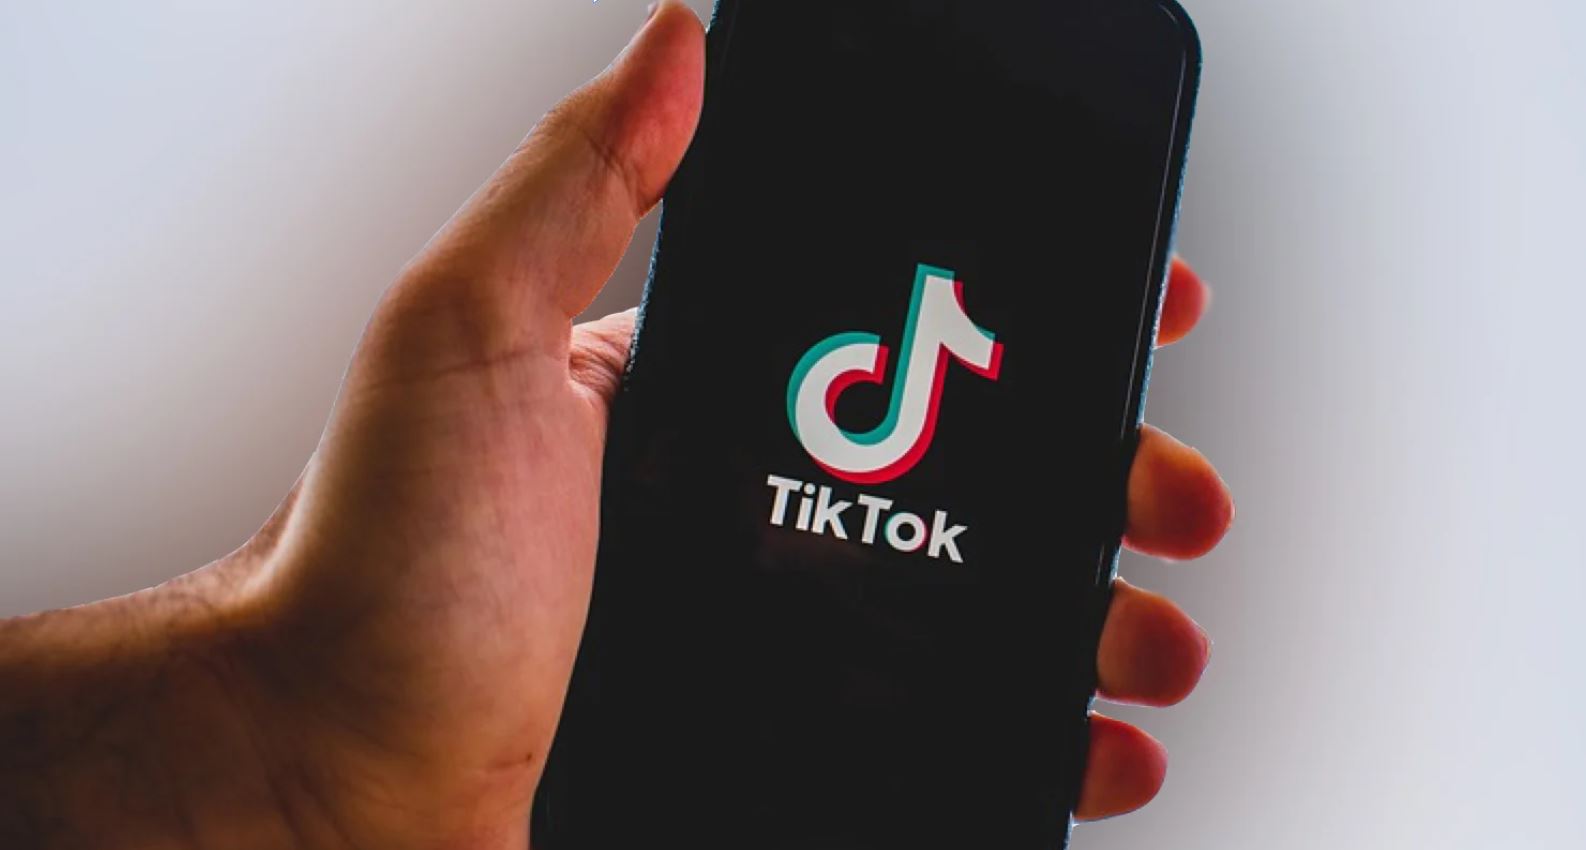 Tiktok เปิดตัว Tiktok pulse แบ่งรายได้ค่าโฆษณาให้ครีเอเตอร์ 50% นำร่อง มิ.ย. นี้